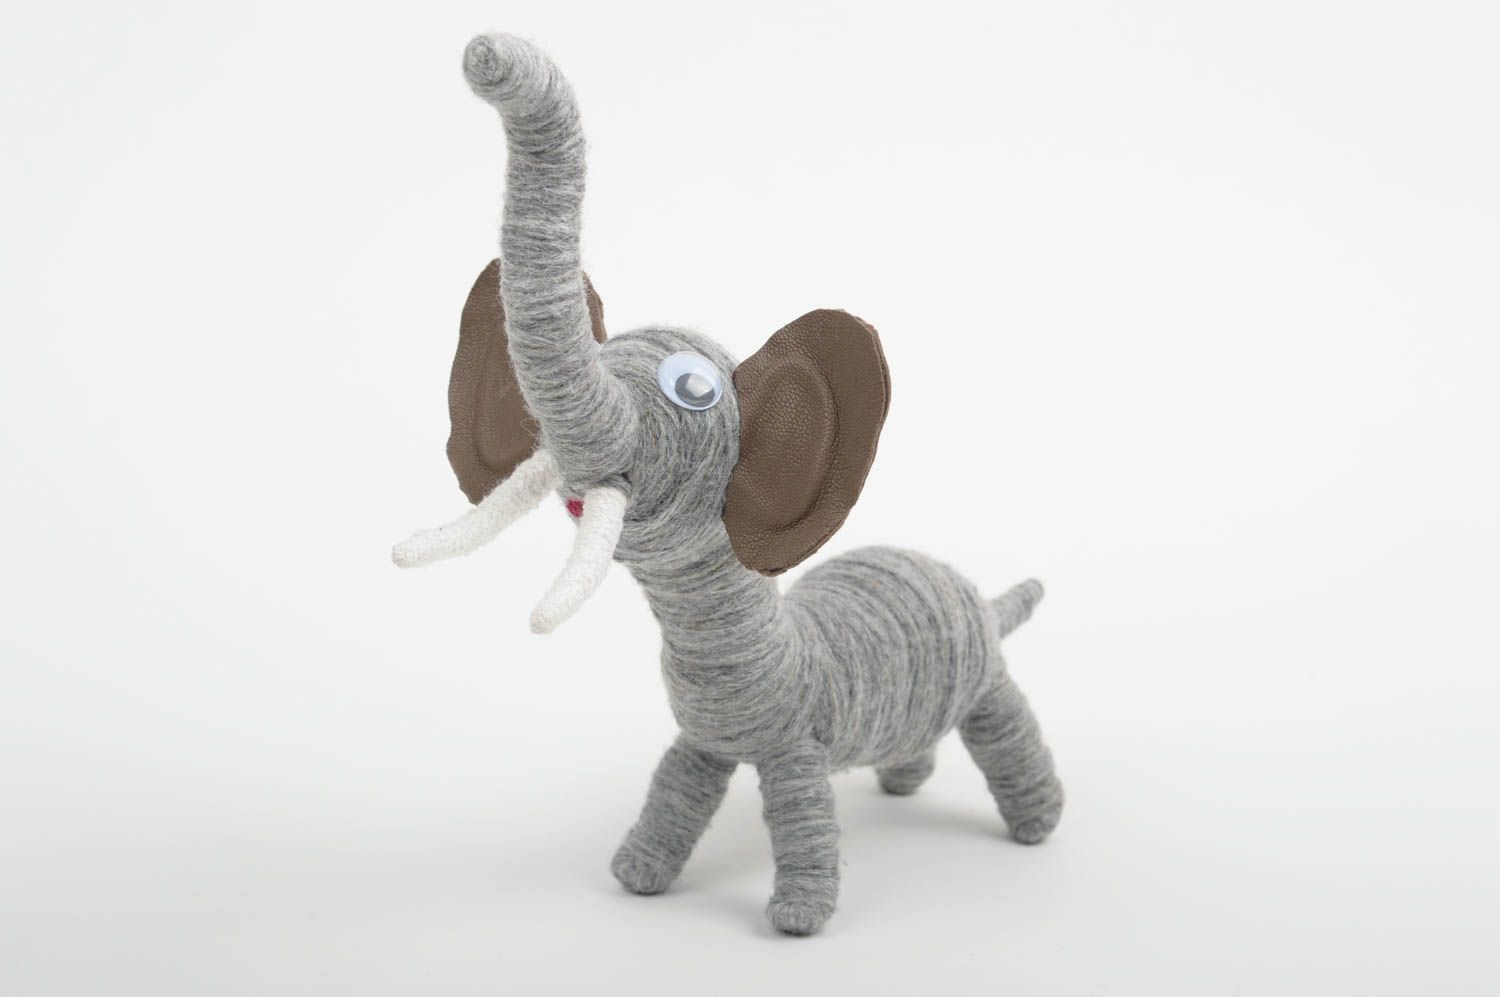 Игрушка слоник ручной работы игрушка животное авторская игрушка из ниток фото 1